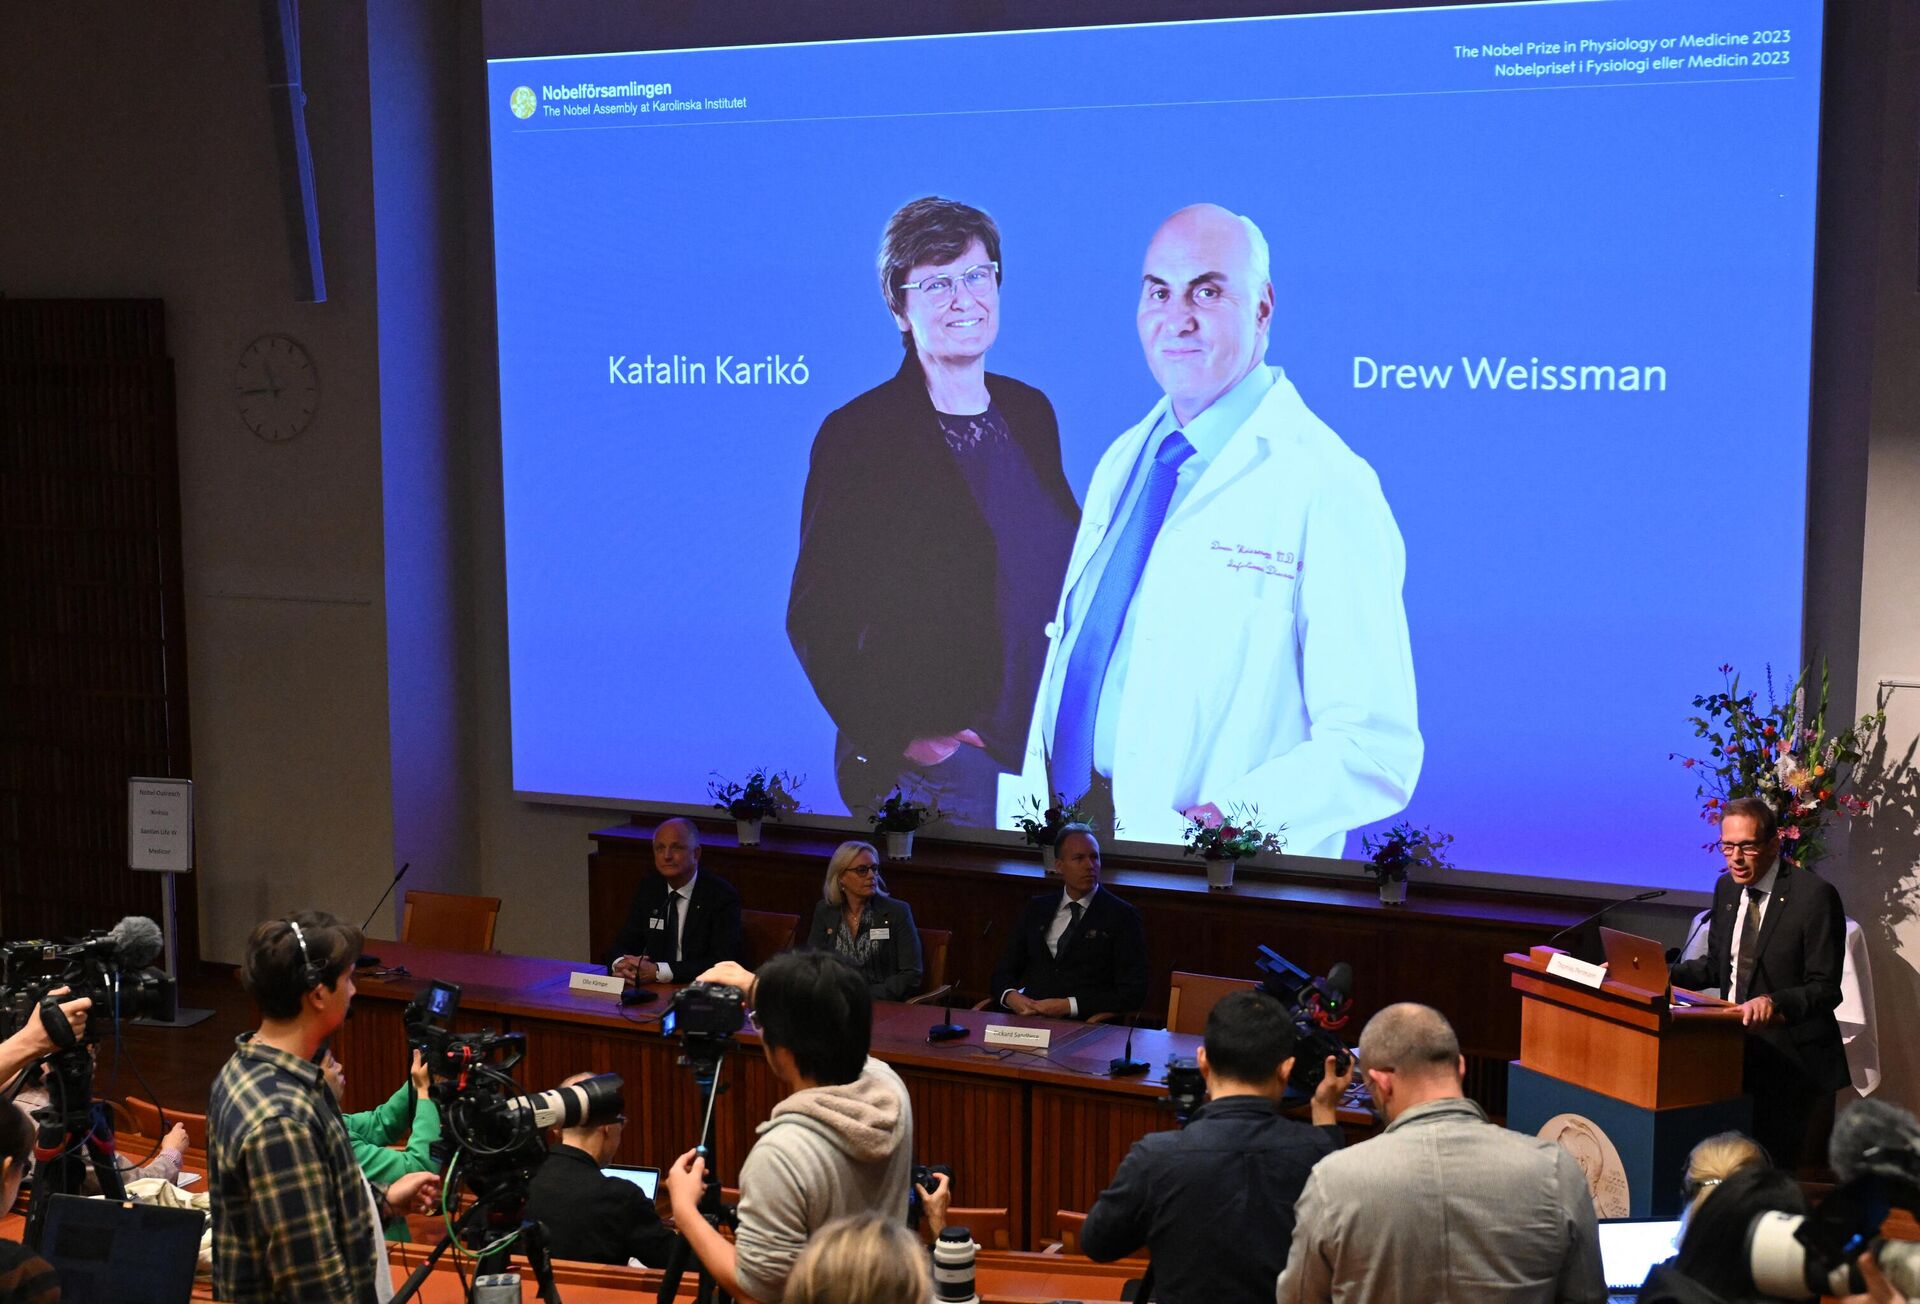 Hai nhà khoa học Katalin Karikо và Drew Weissman đã được trao giải Nobel Y sinh năm 2023 - Sputnik Việt Nam, 1920, 02.10.2023